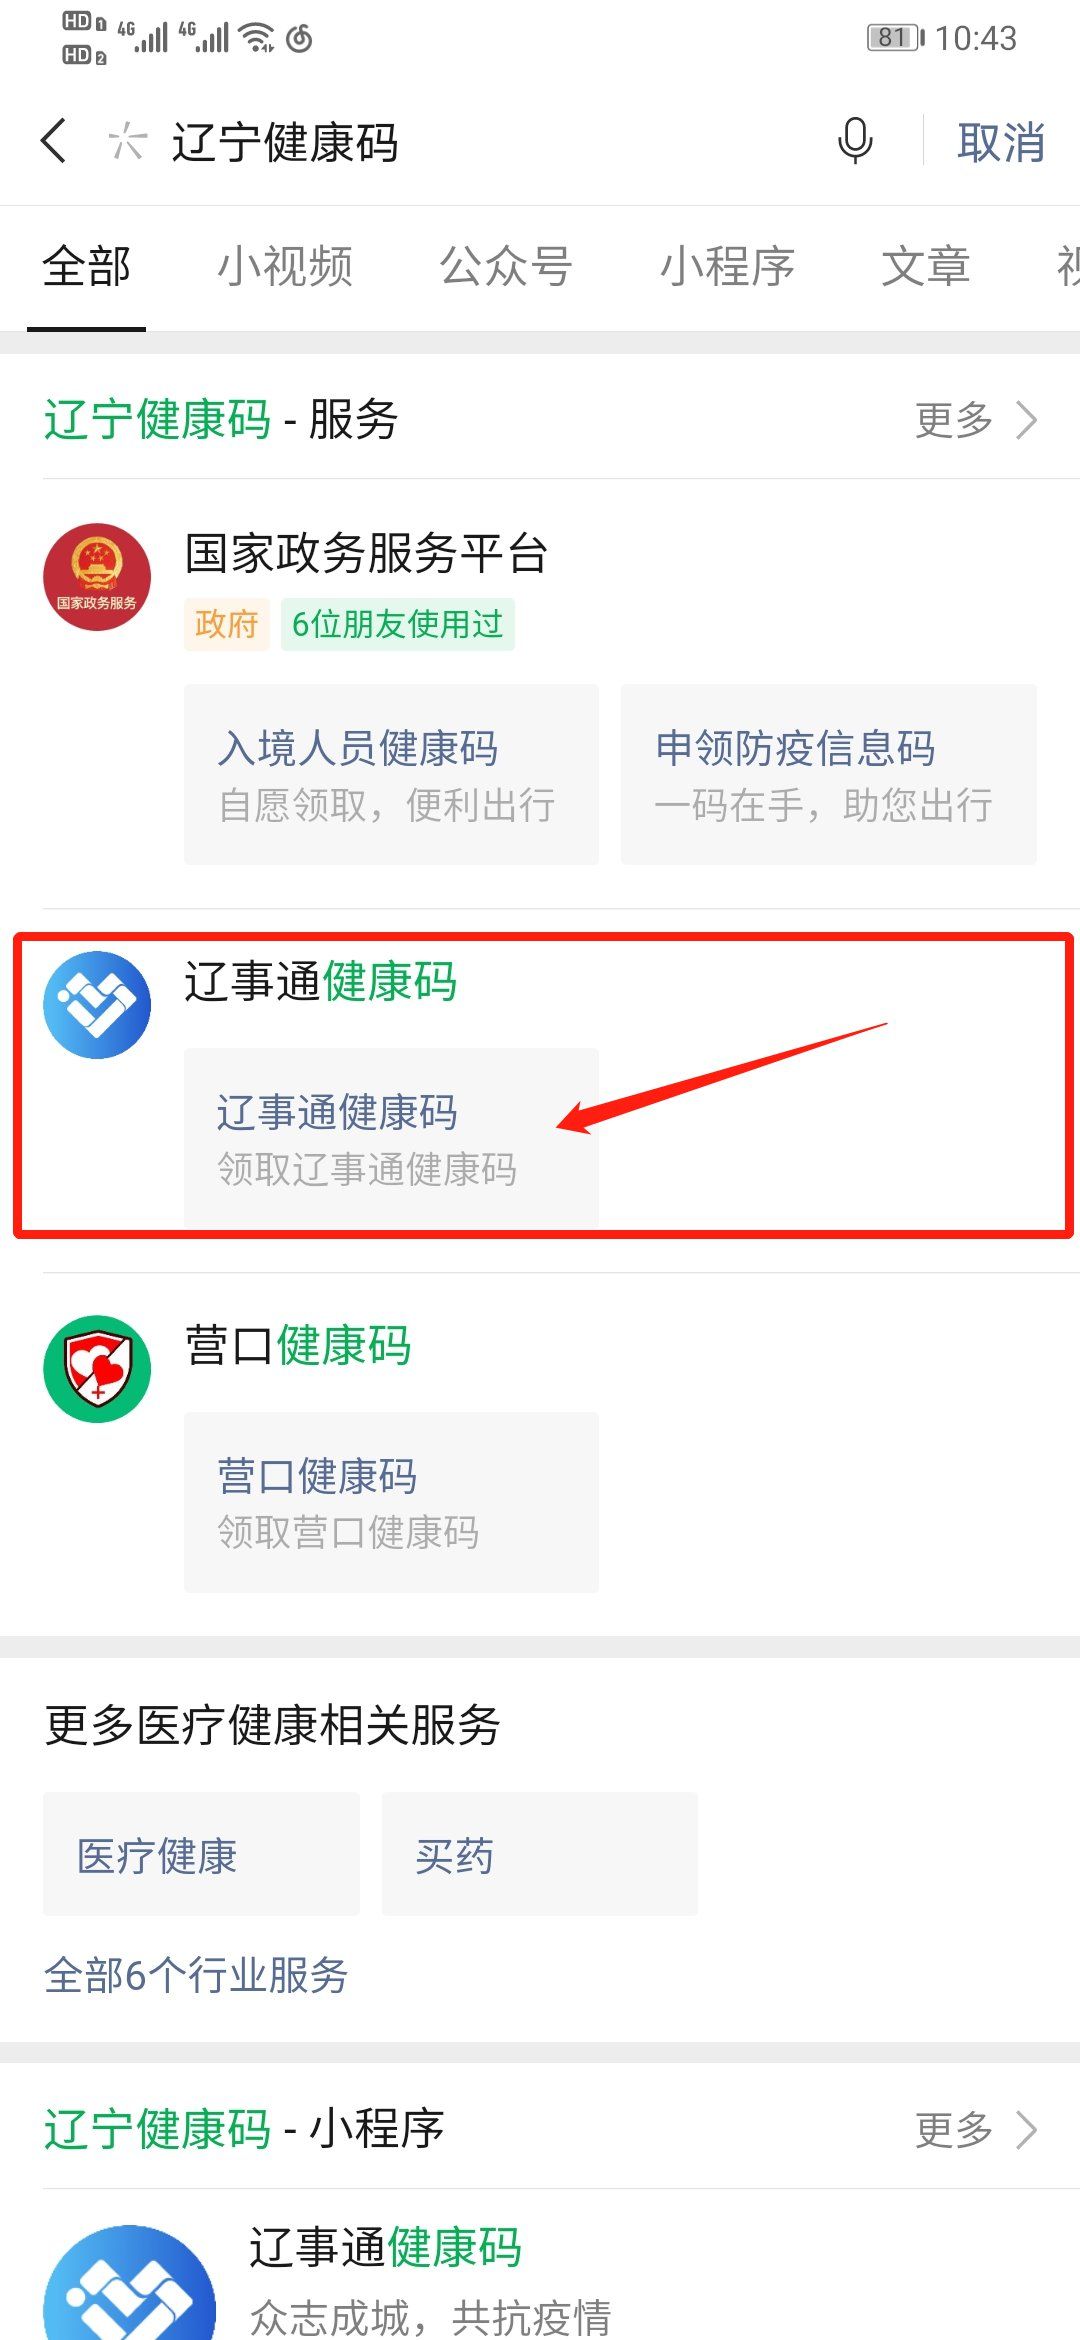 办事 医疗健康 锦州健康码申请流程 第一步:微信搜索"辽宁健康码"